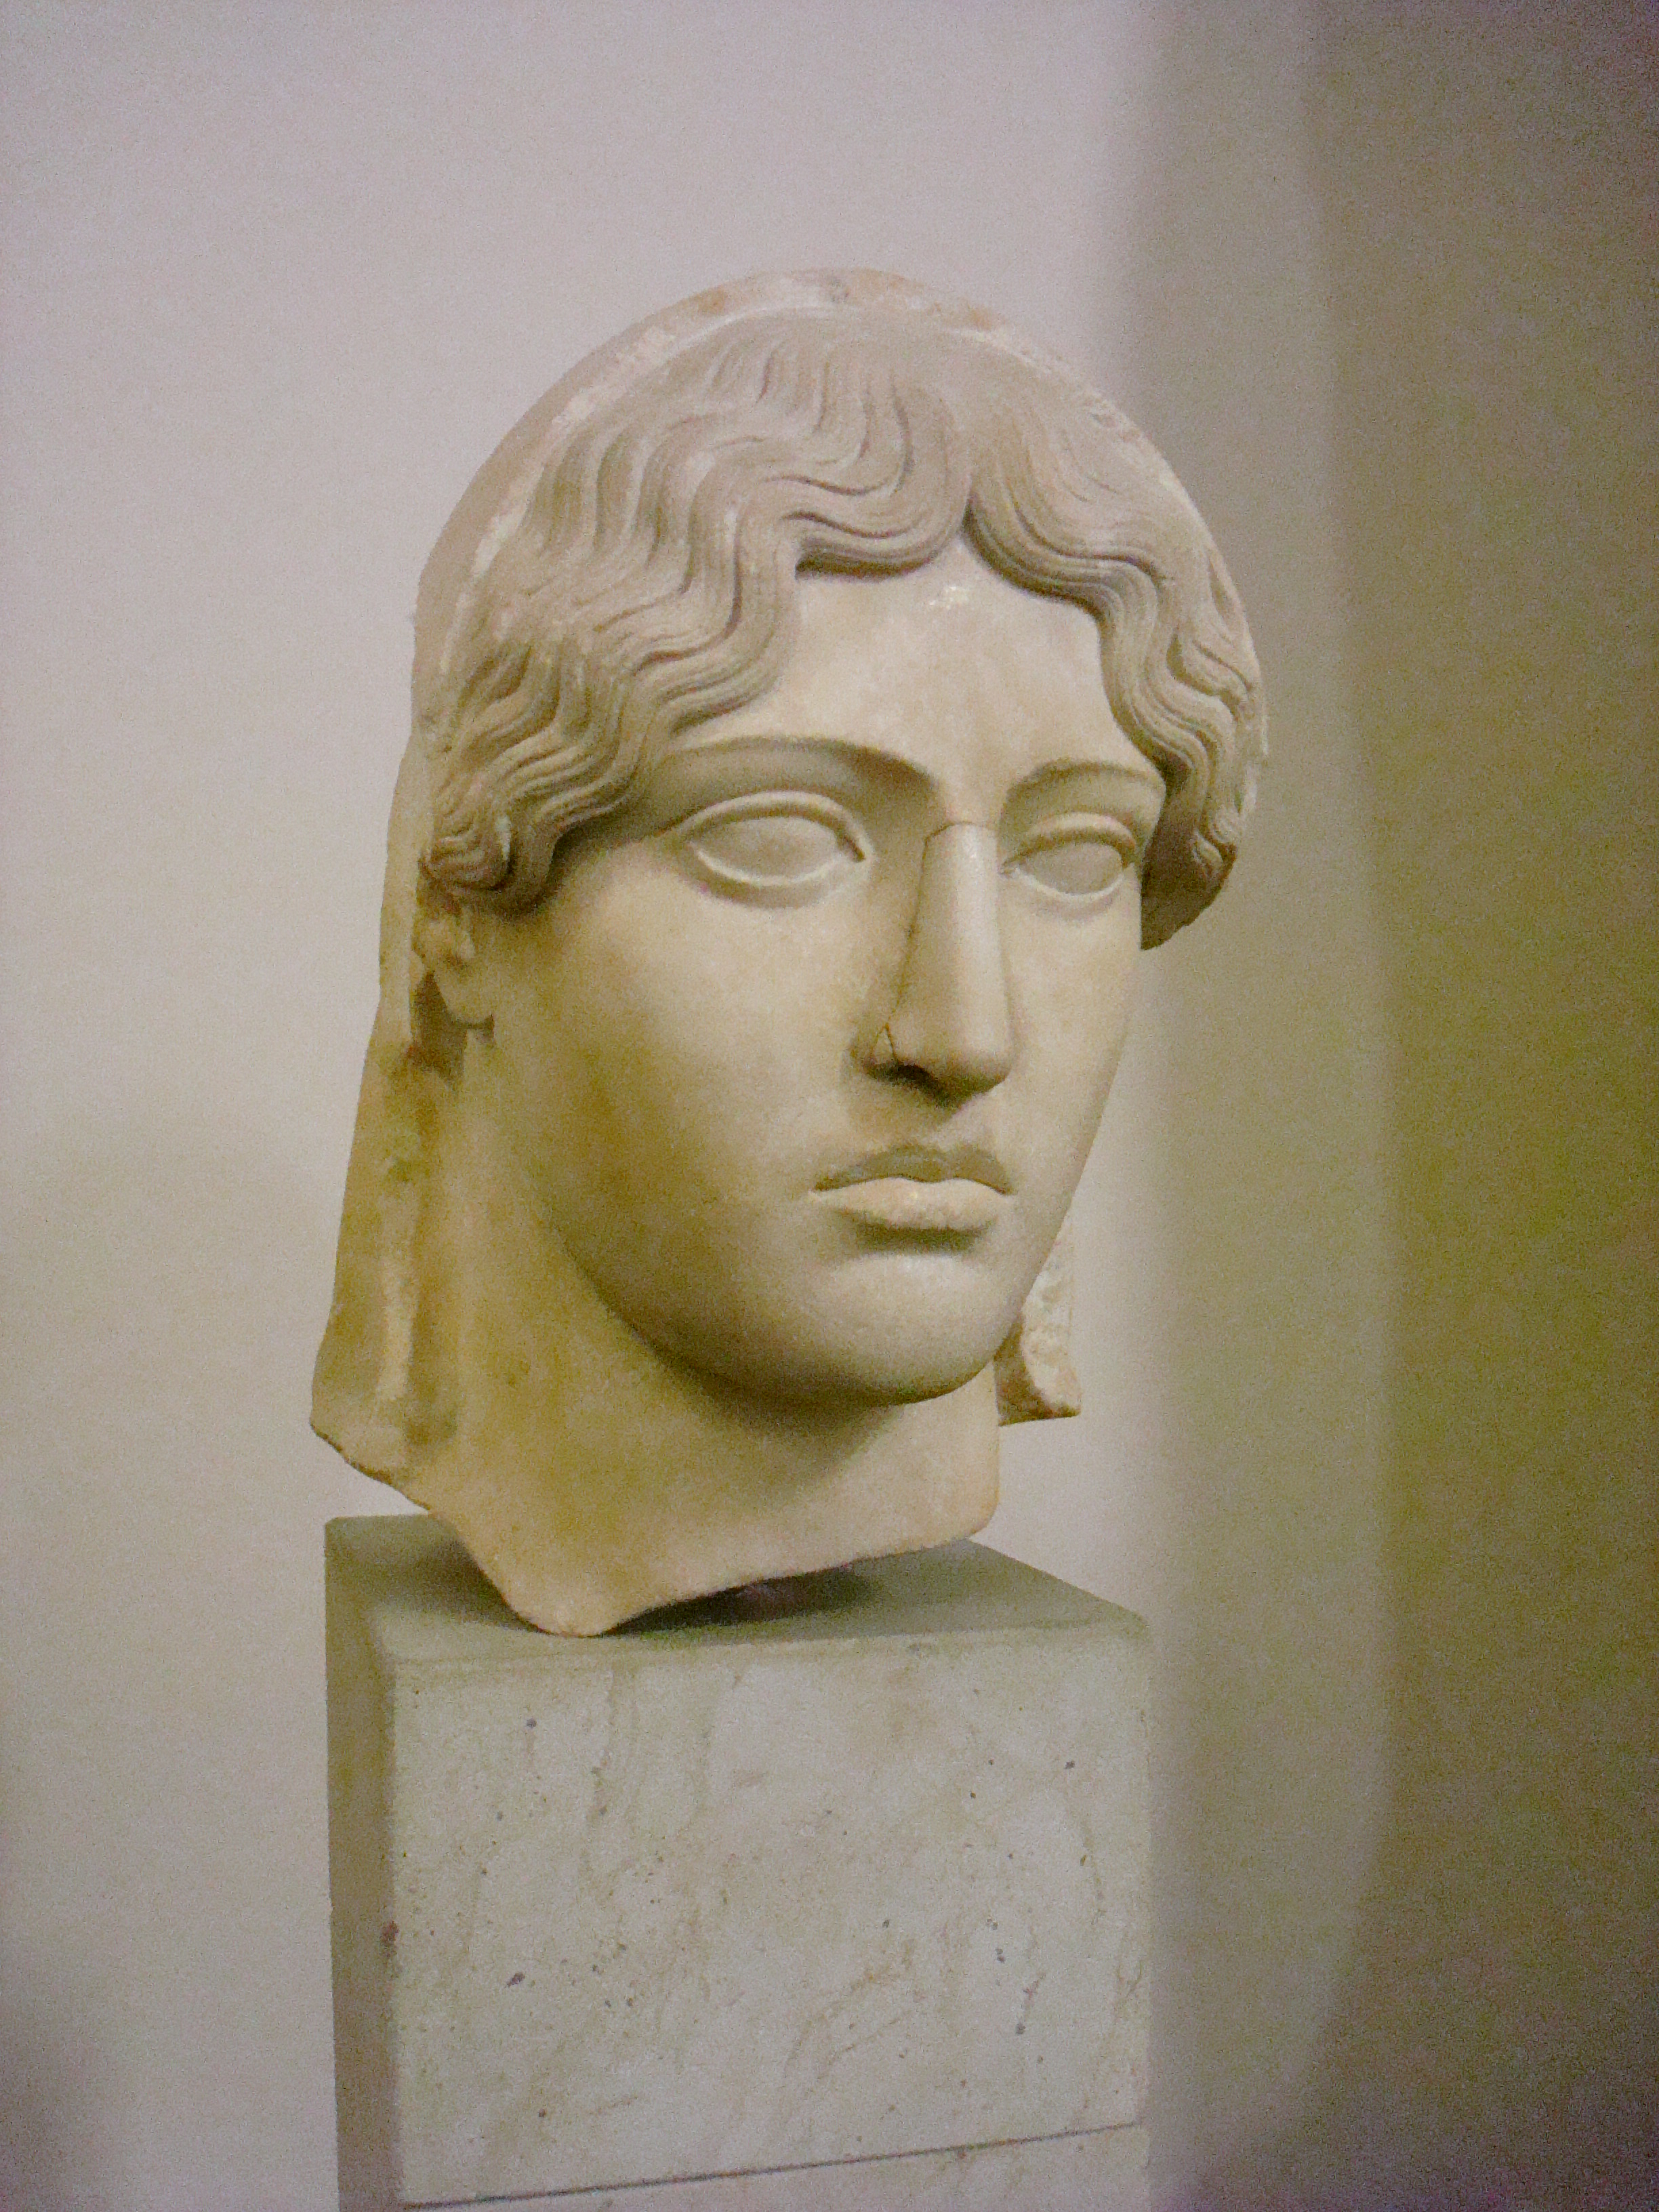 Busto di Aspasia, copia romana di un originale greco datato intorno al 460 AC, Museo di Pergamo. Foto di Daigaz.